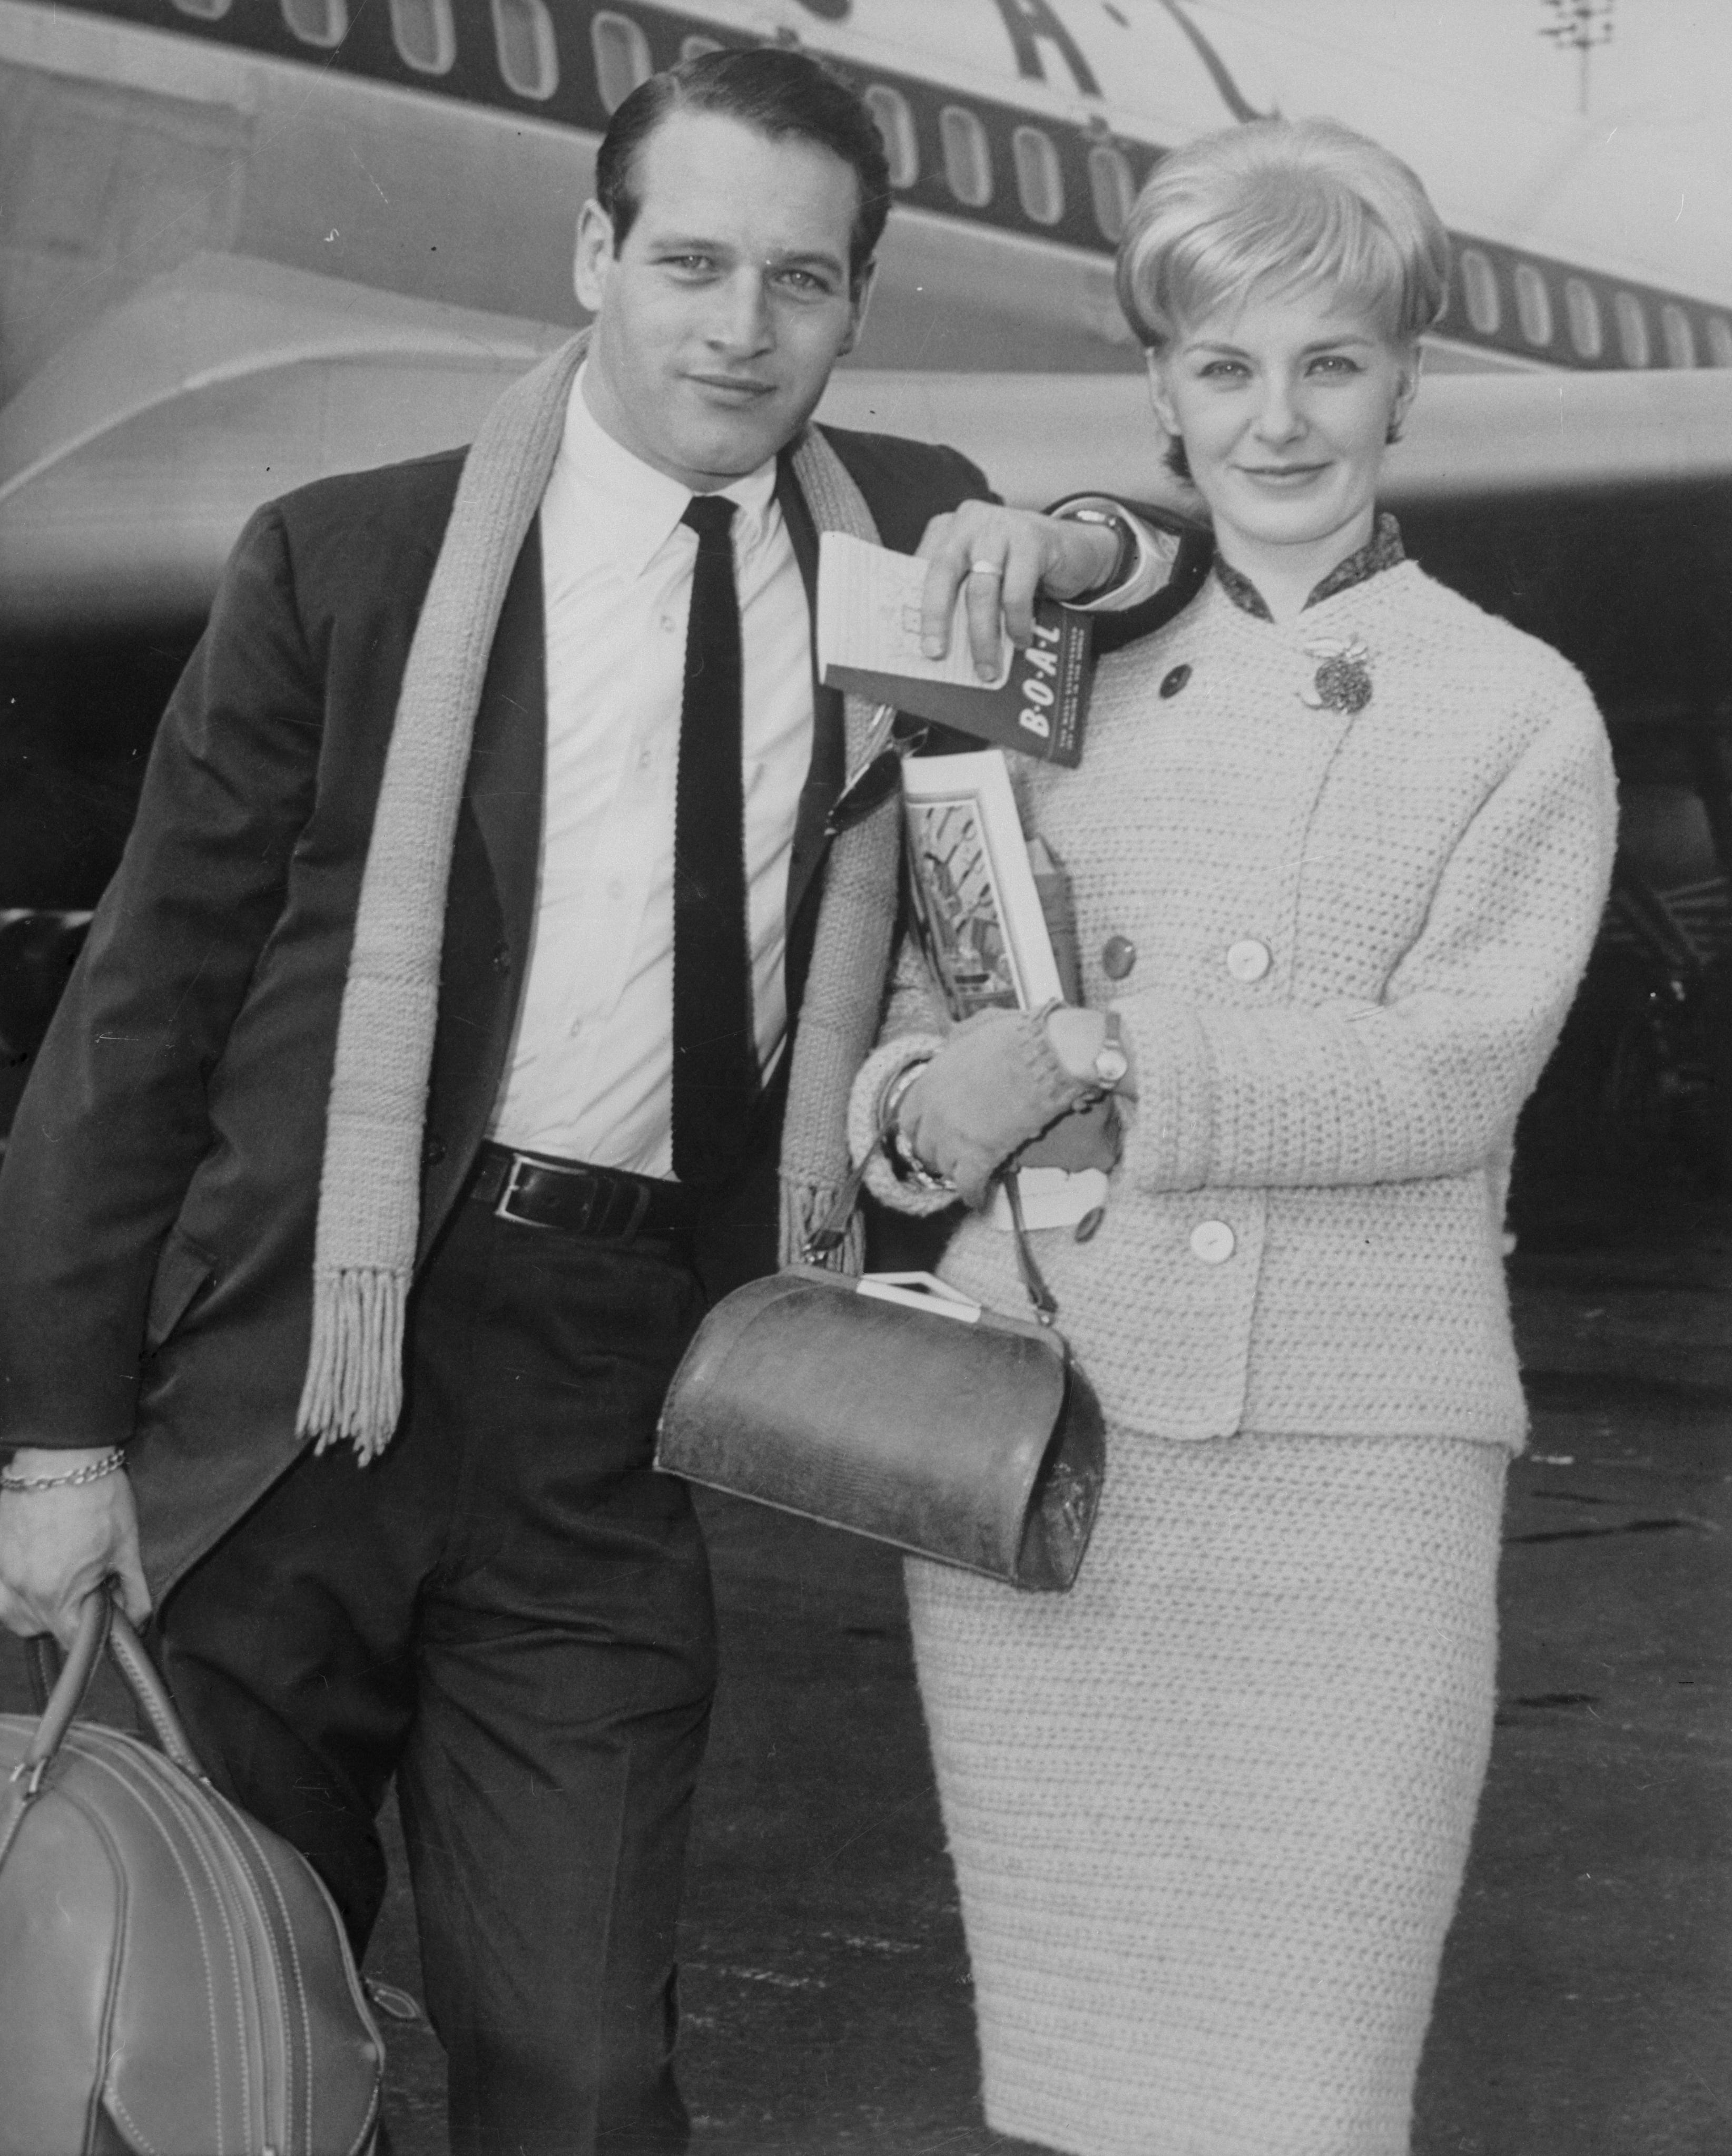 Der Schauspieler Paul Newman und seine Frau, die Schauspielerin Joanne Woodward, verlassen am 13. Februar 1961 den New Yorker Flughafen Idlewild über Boac Plane nach Kingston, Jamaika, um einen zehntägigen Urlaub zu beginnen.